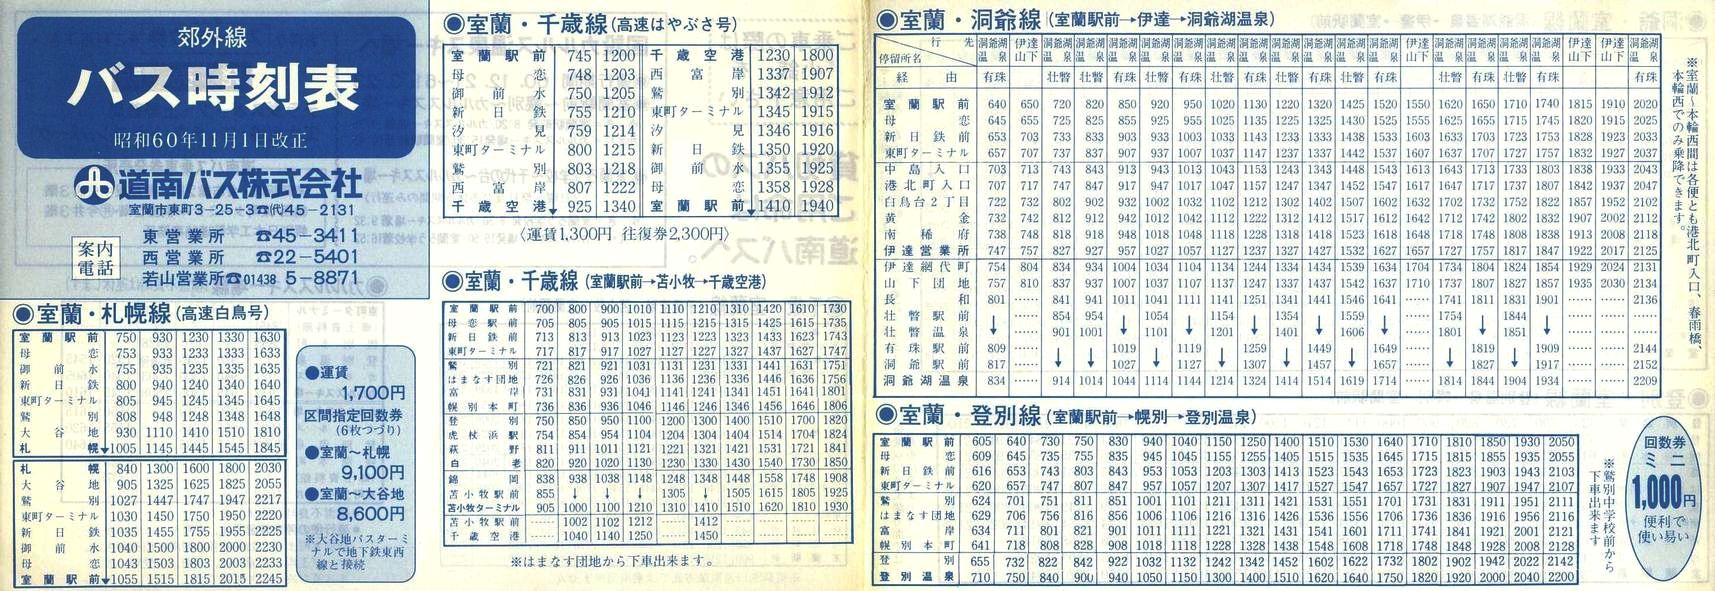 1985-11-01改正_道南バス_室蘭版郊外線表面